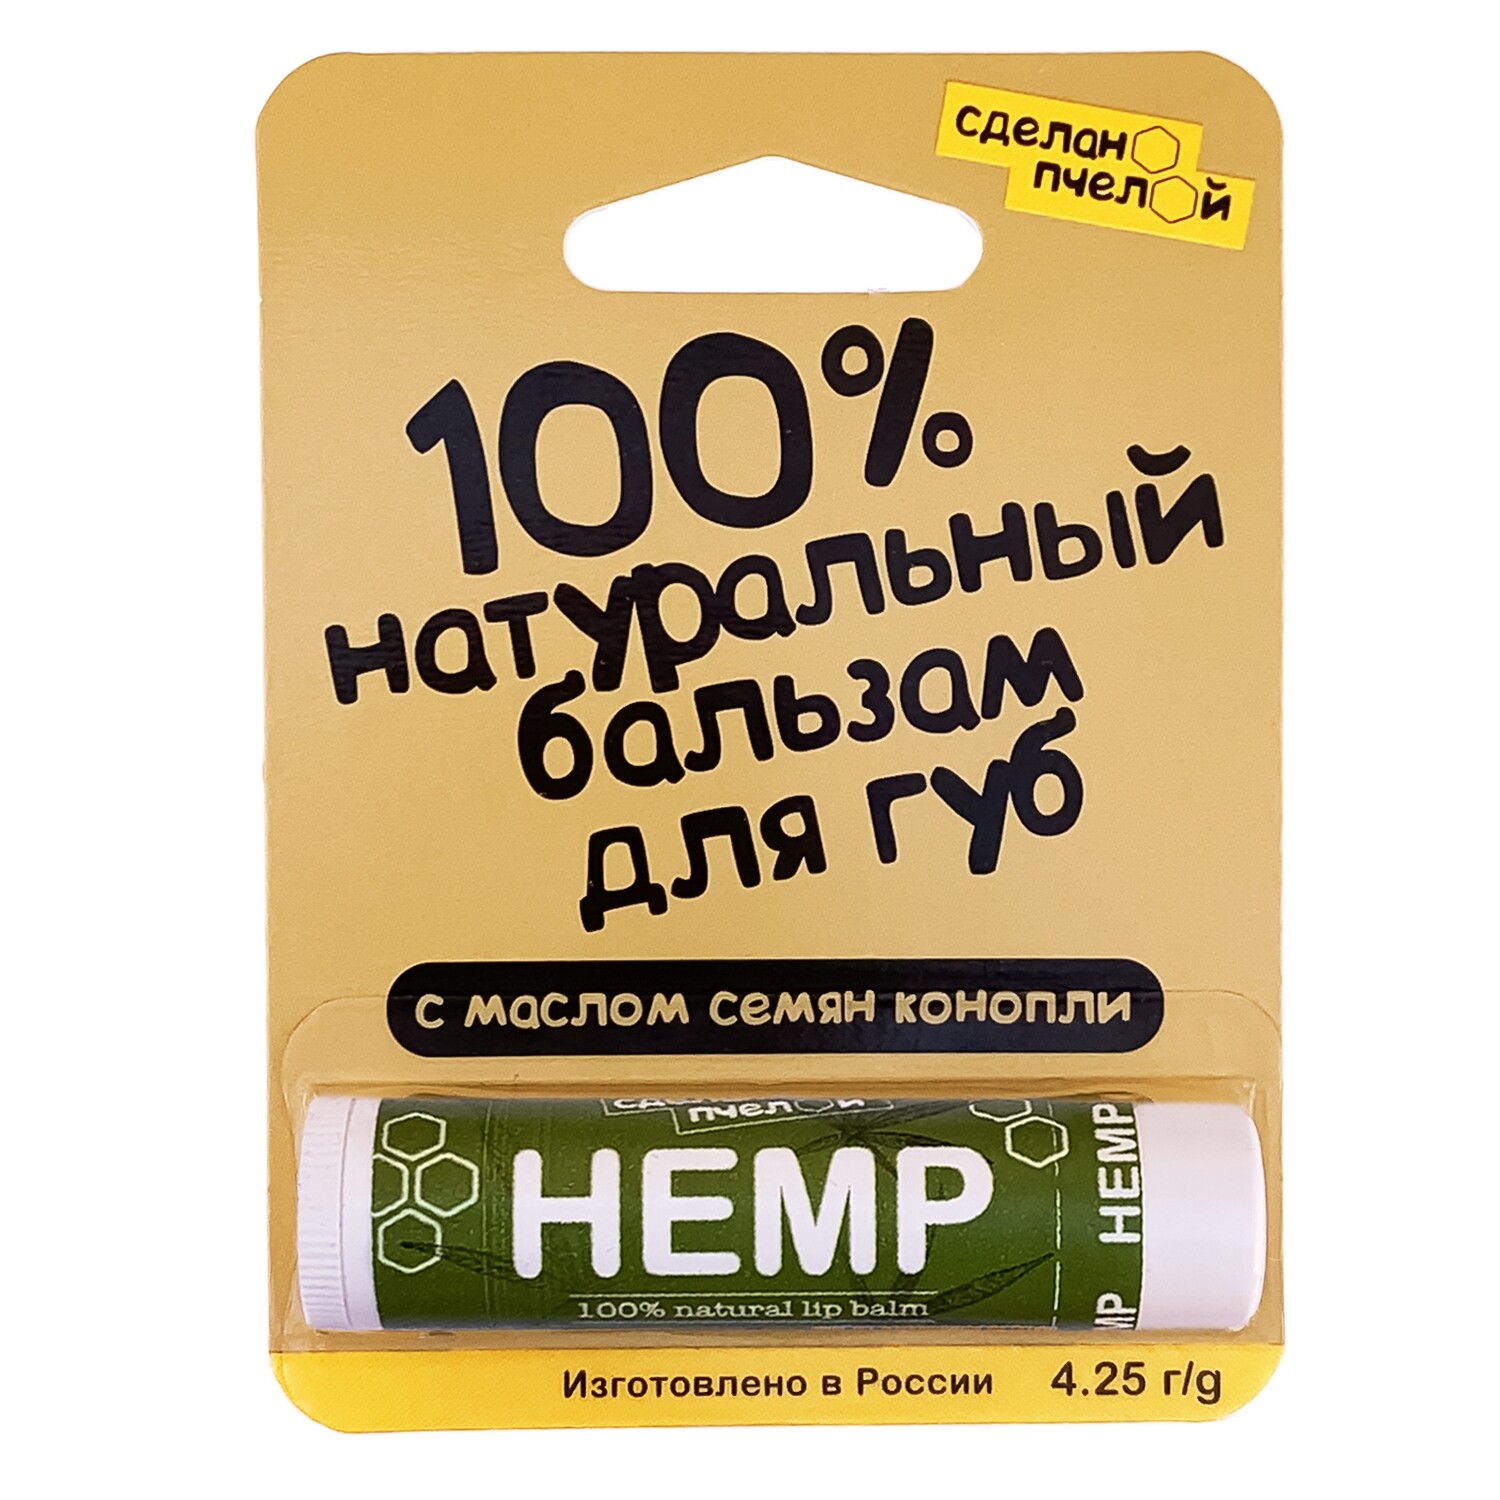 100% натуральный бальзам для губ с пчелиным воском "HEMP"